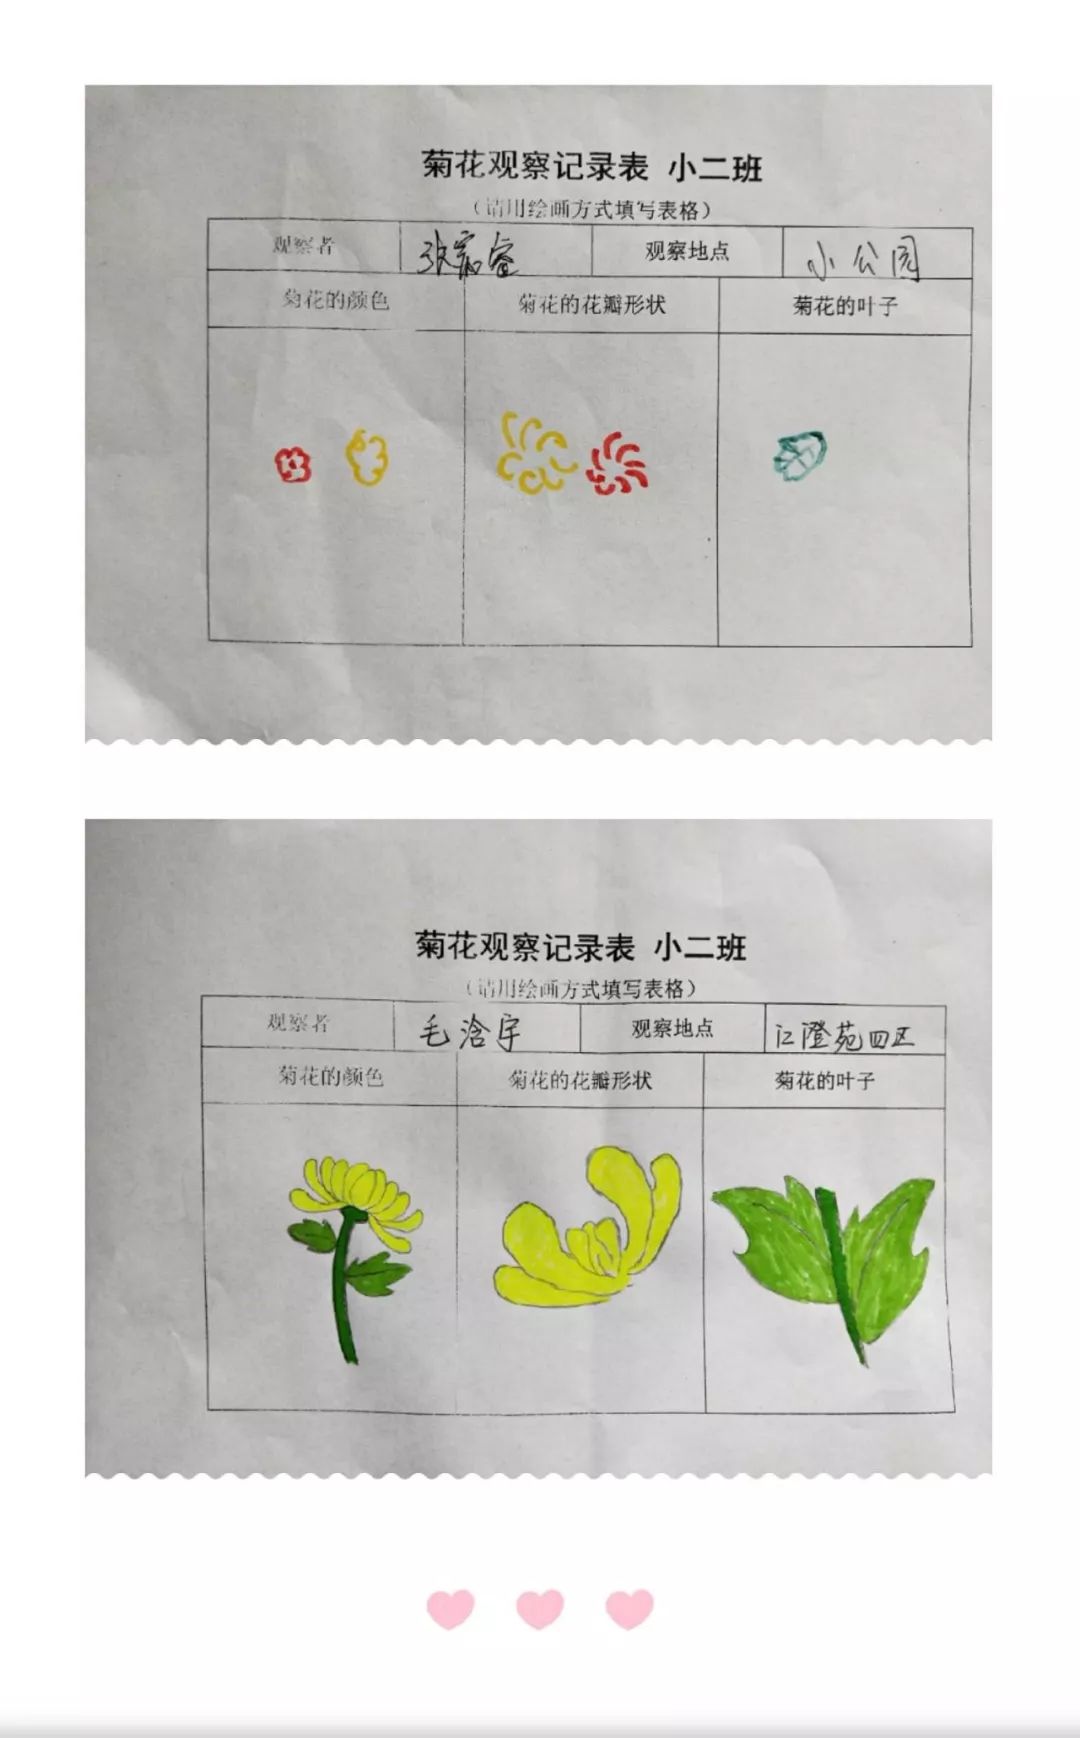 城南办事处中心幼儿园小(2)班学习故事:菊之韵